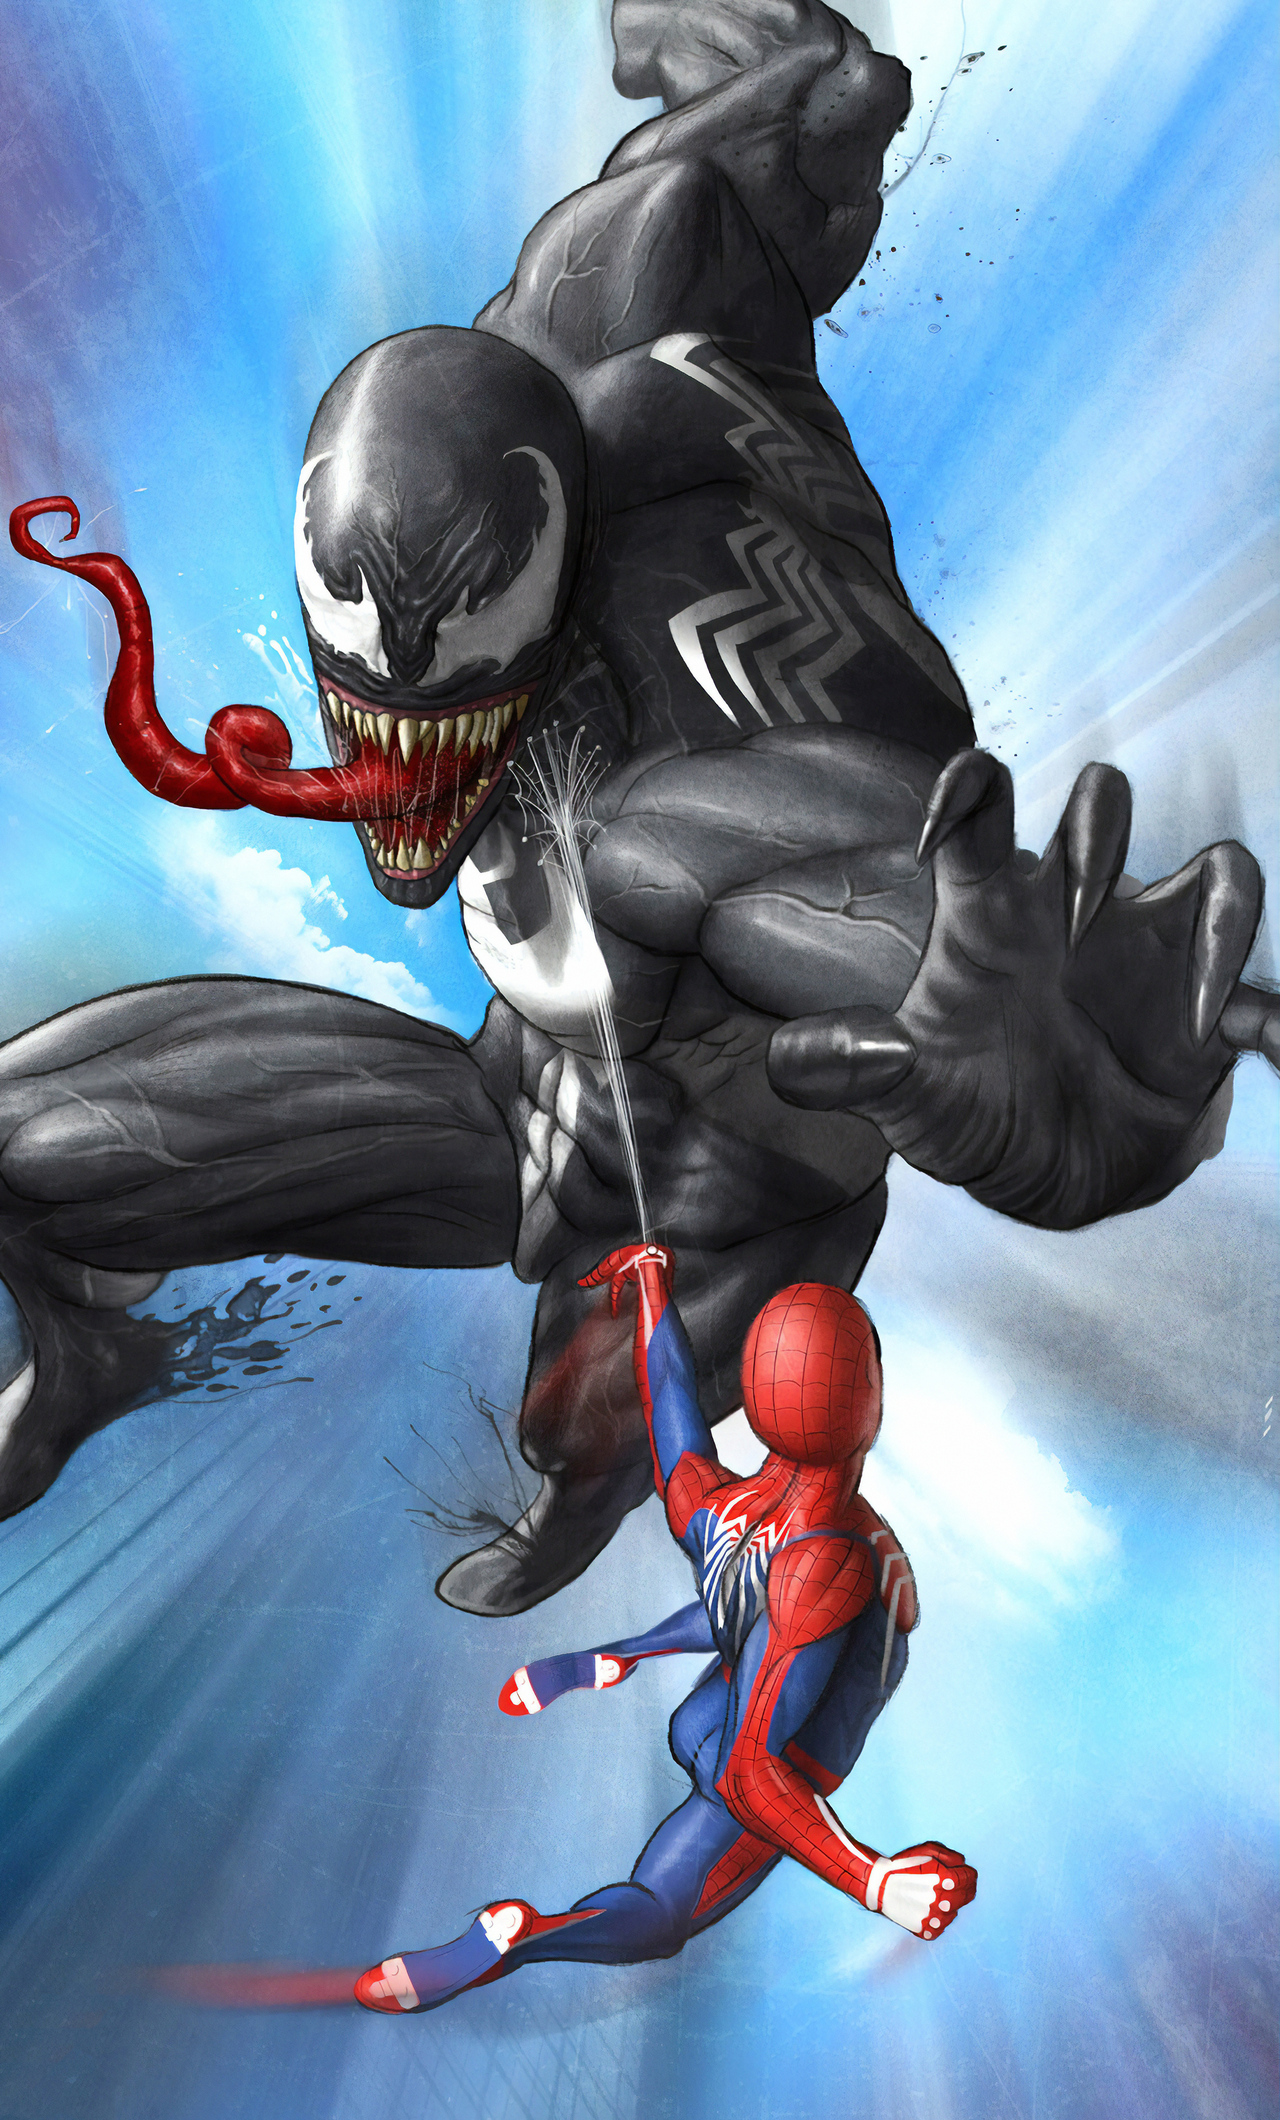 Venom And Spider In 1280x2120 Resolution. venom-and-spider-ug.jpg. 